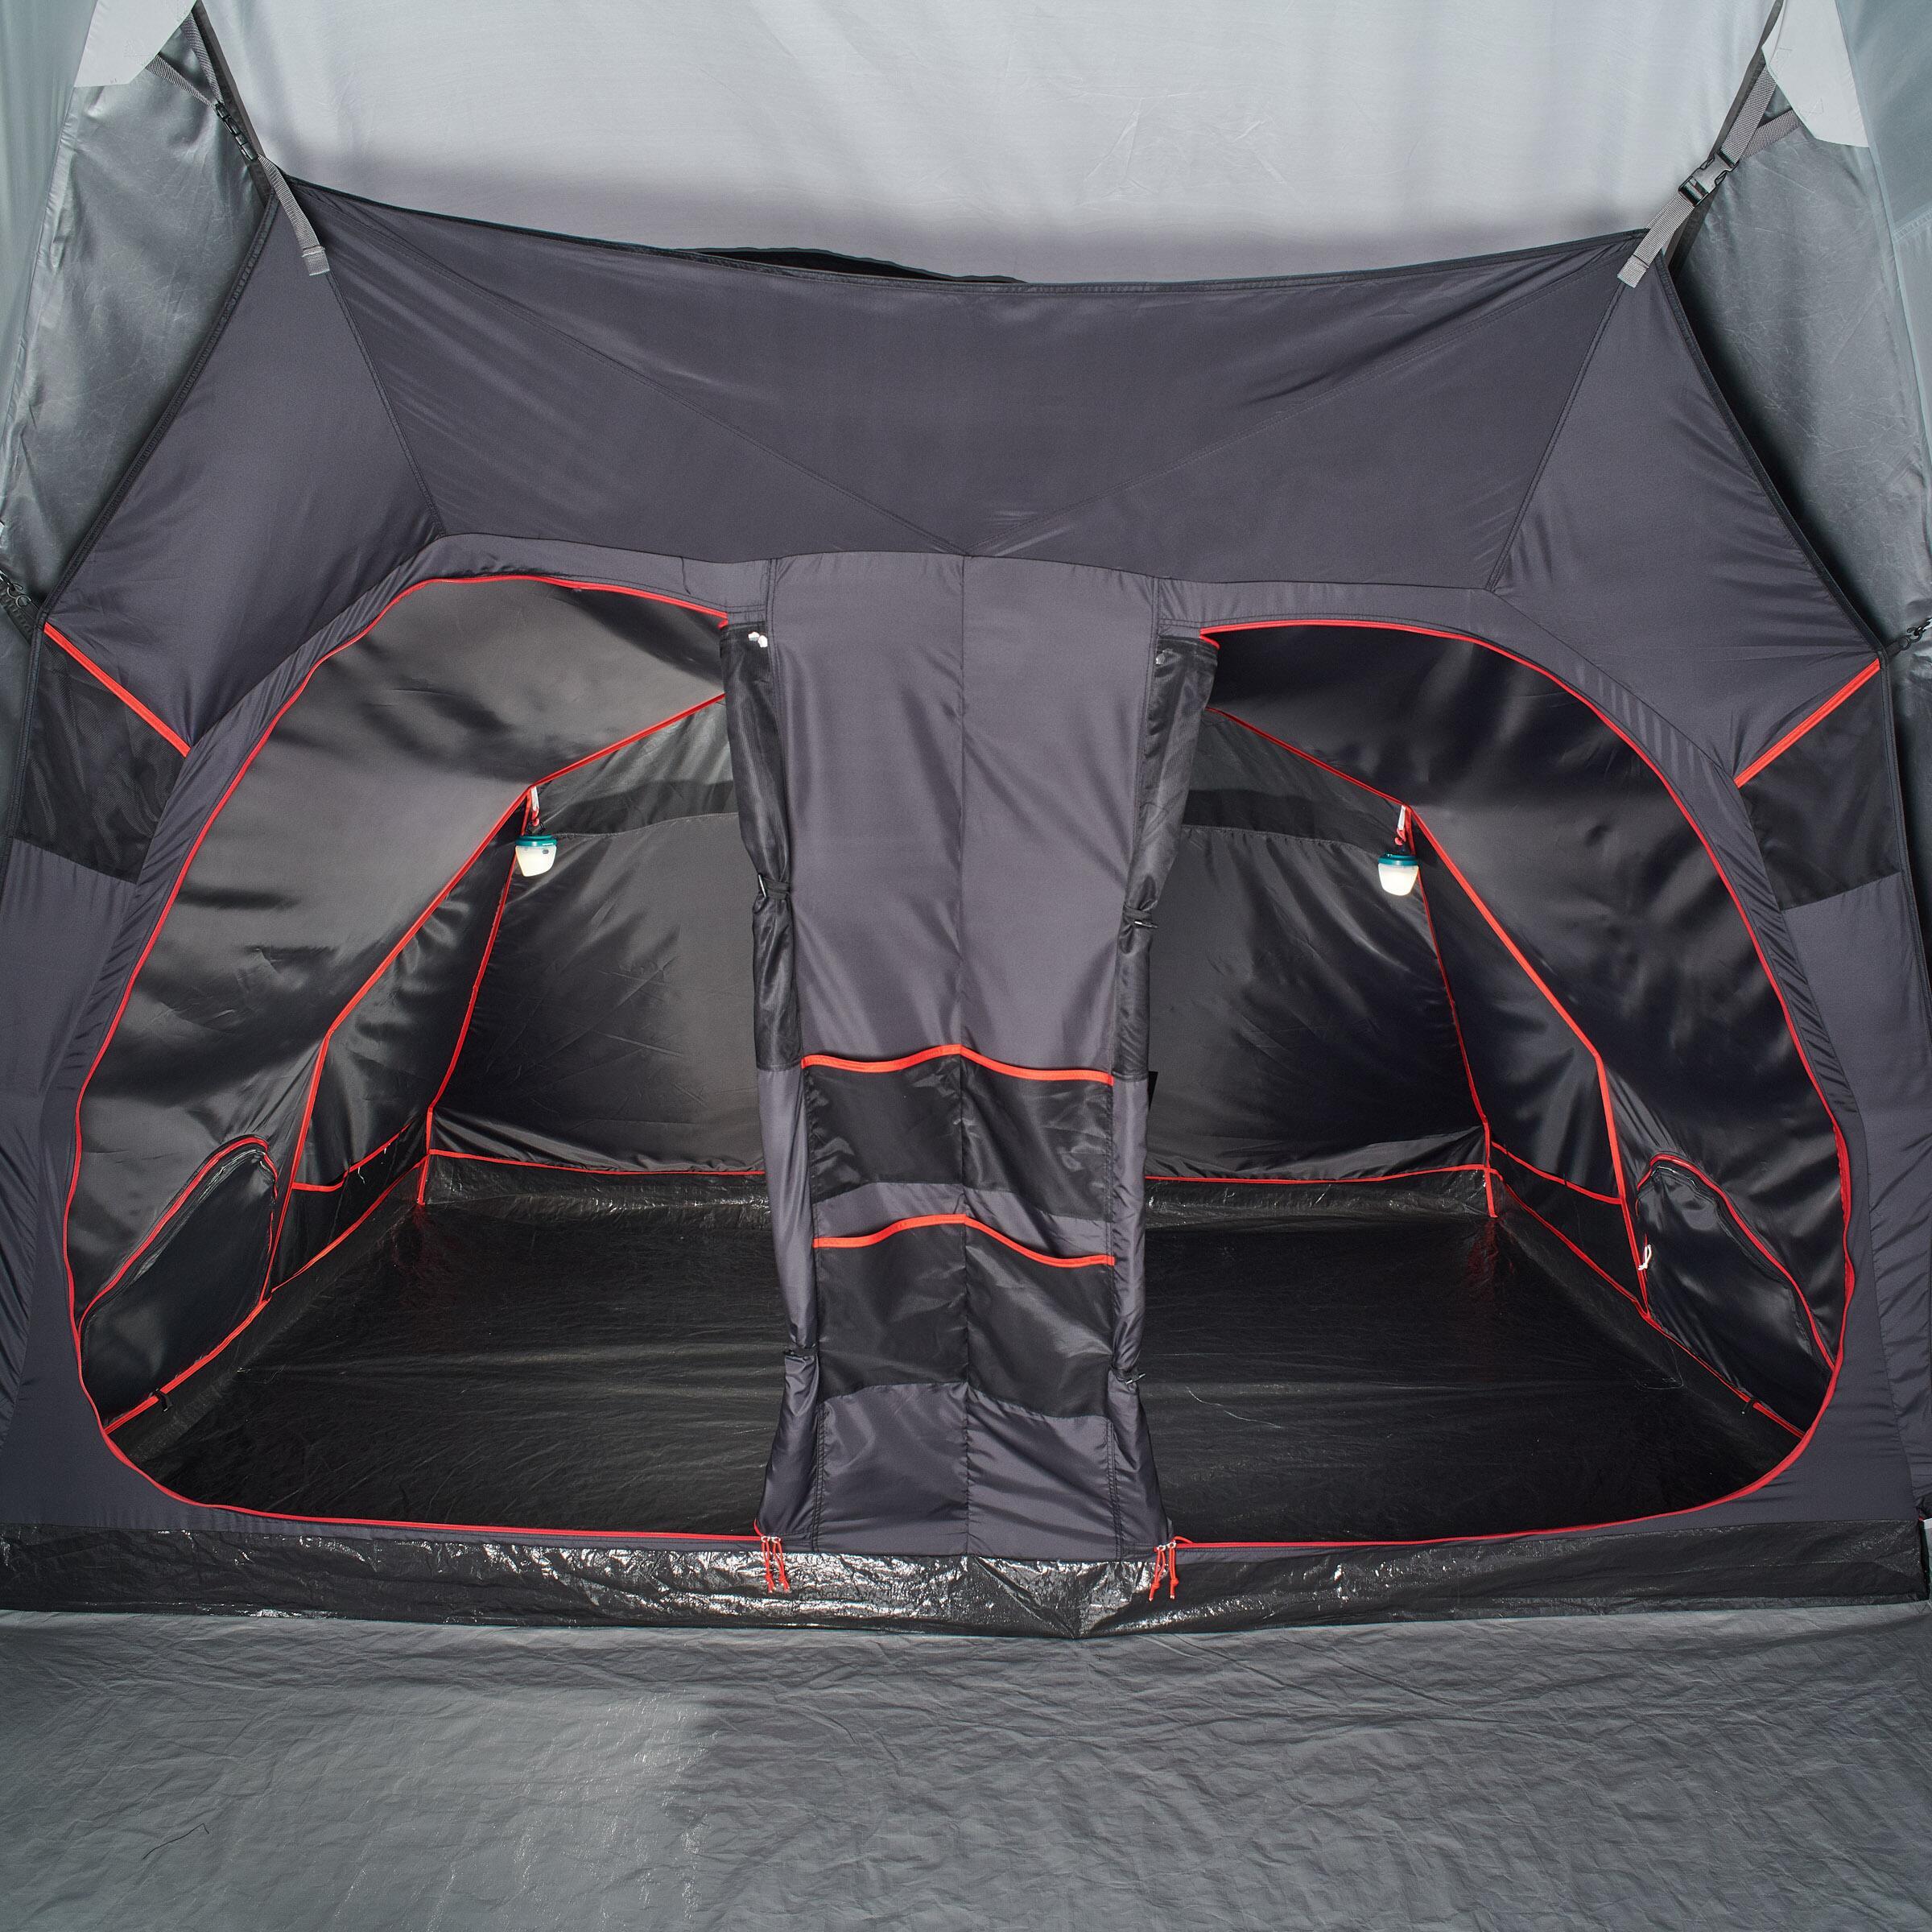 цена Спальная кабина и пол палатки Quechua Air Seconds 8.4 F&B как запчасть для модели палатки